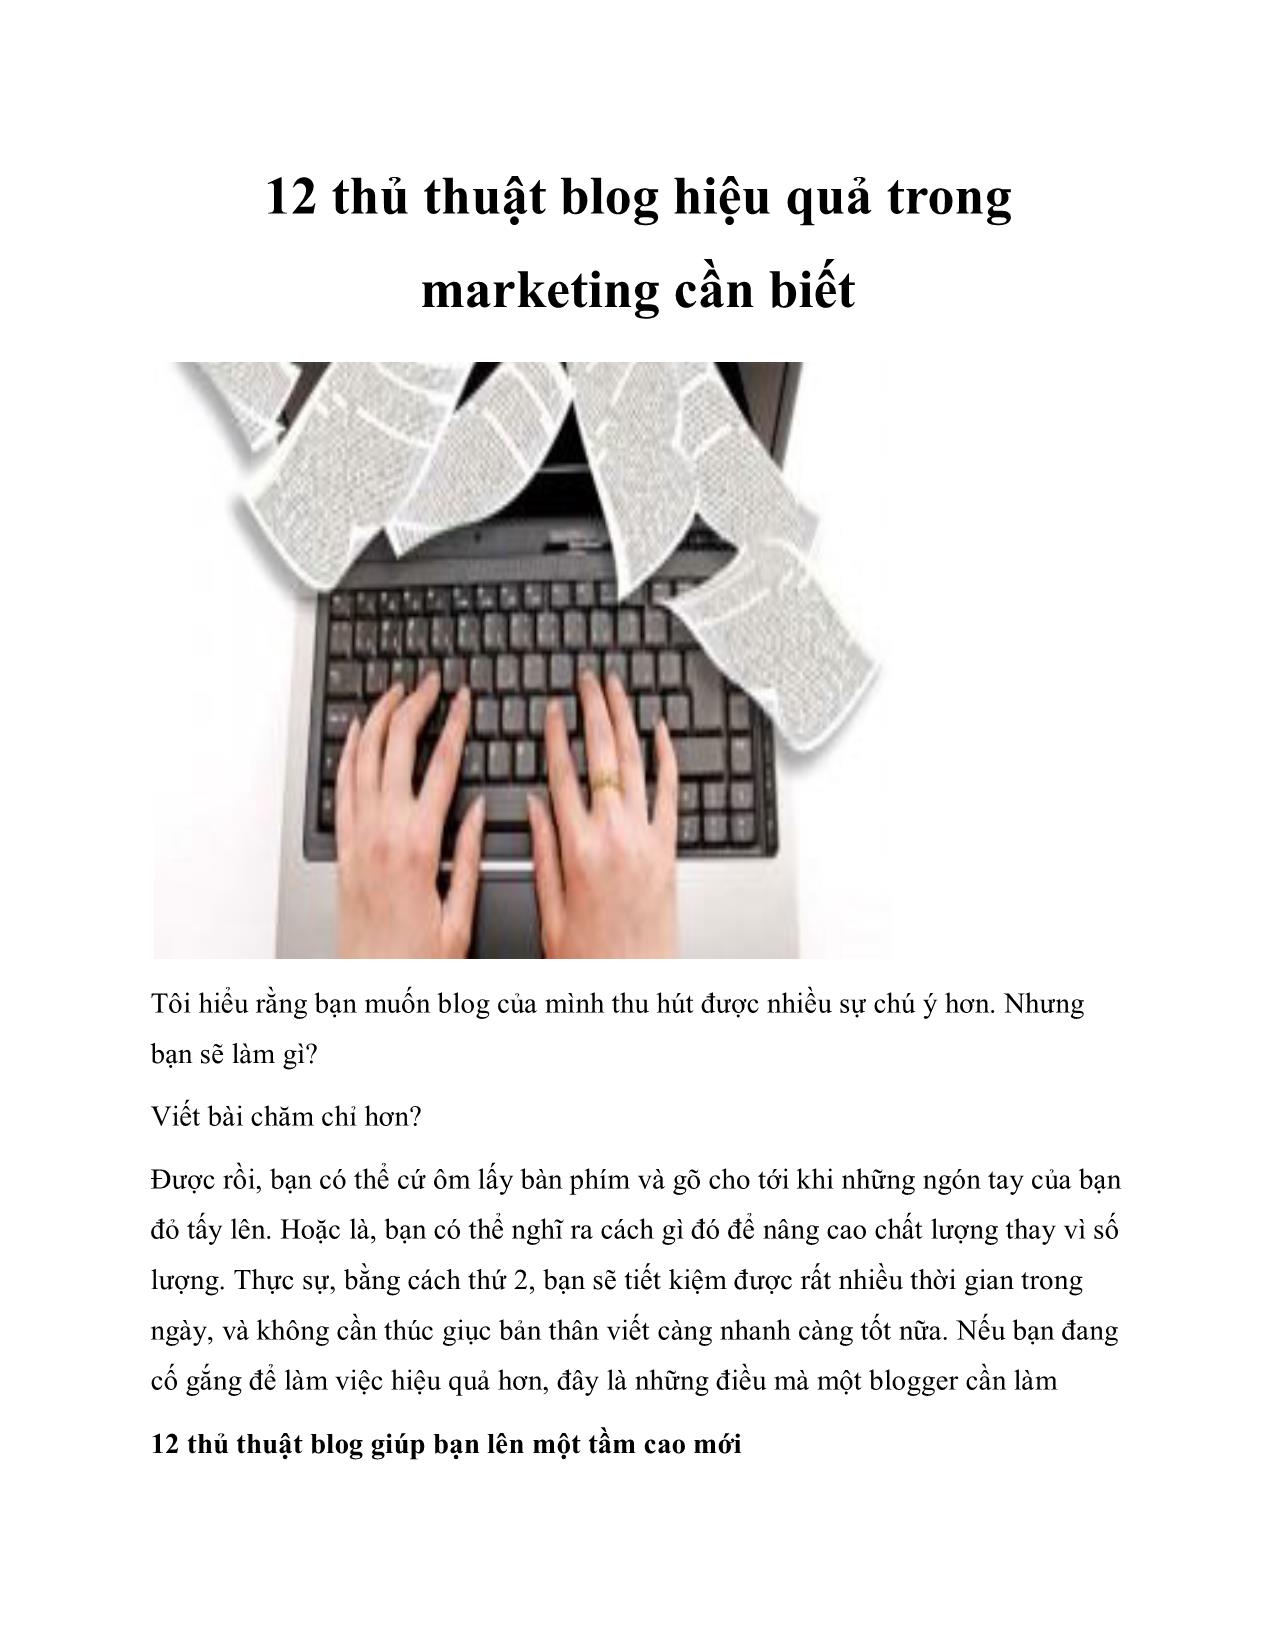 12 thủ thuật blog hiệu quả trong marketing cần biết trang 1